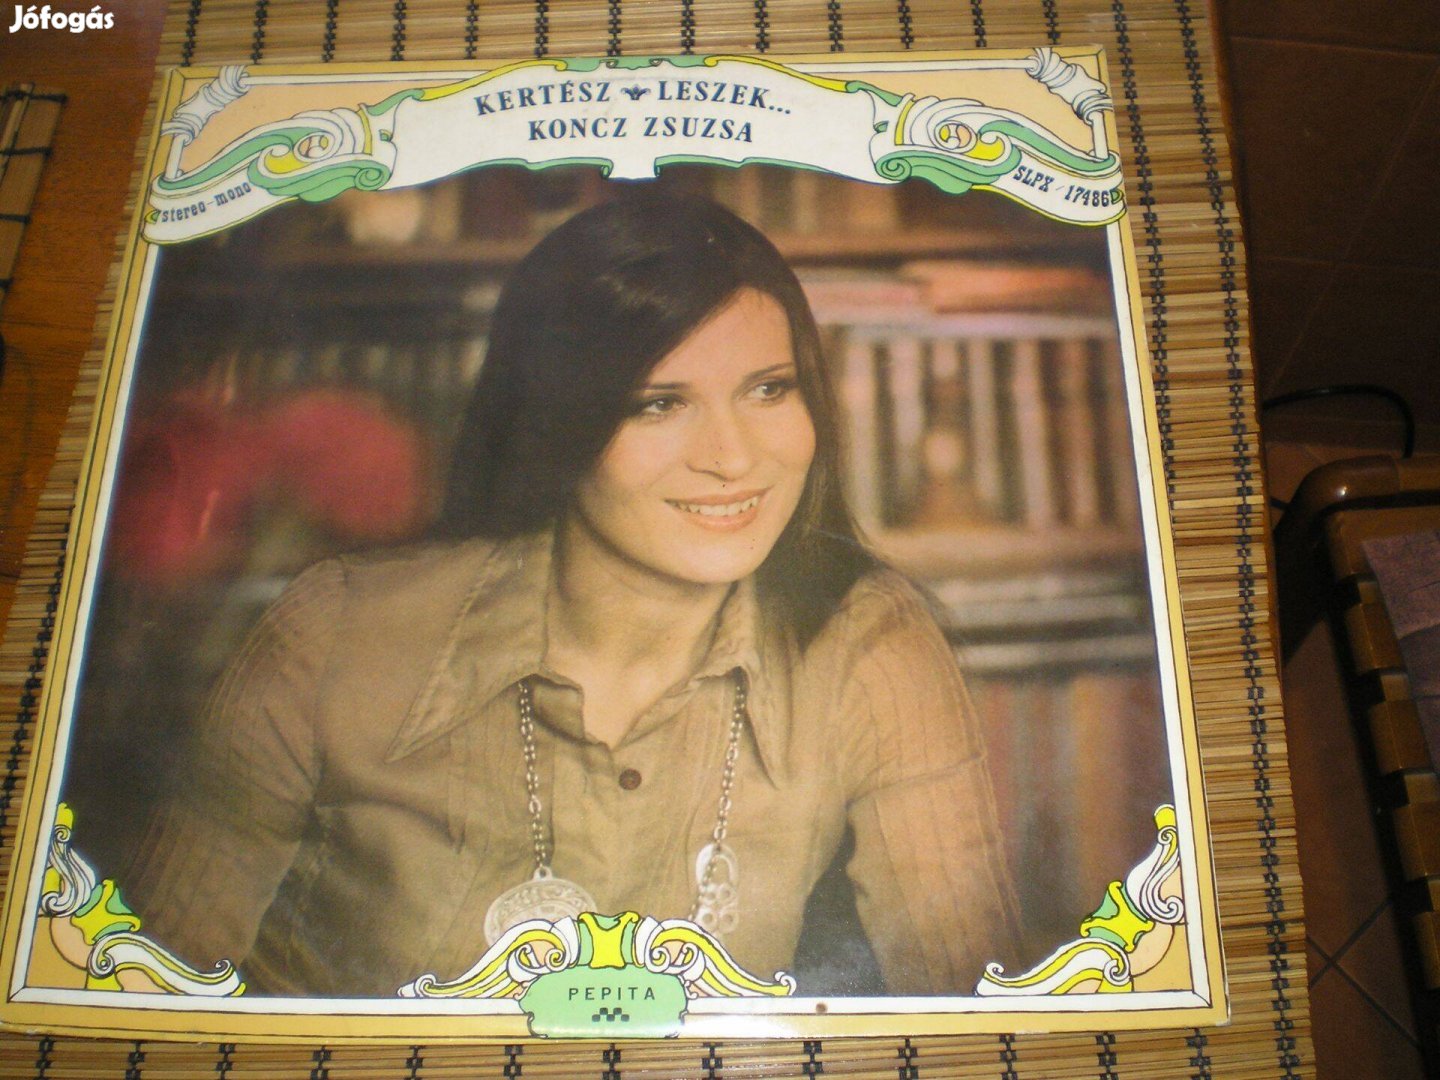 Koncz Zsuzsa Kertész leszek bakelit lemez LP 1975